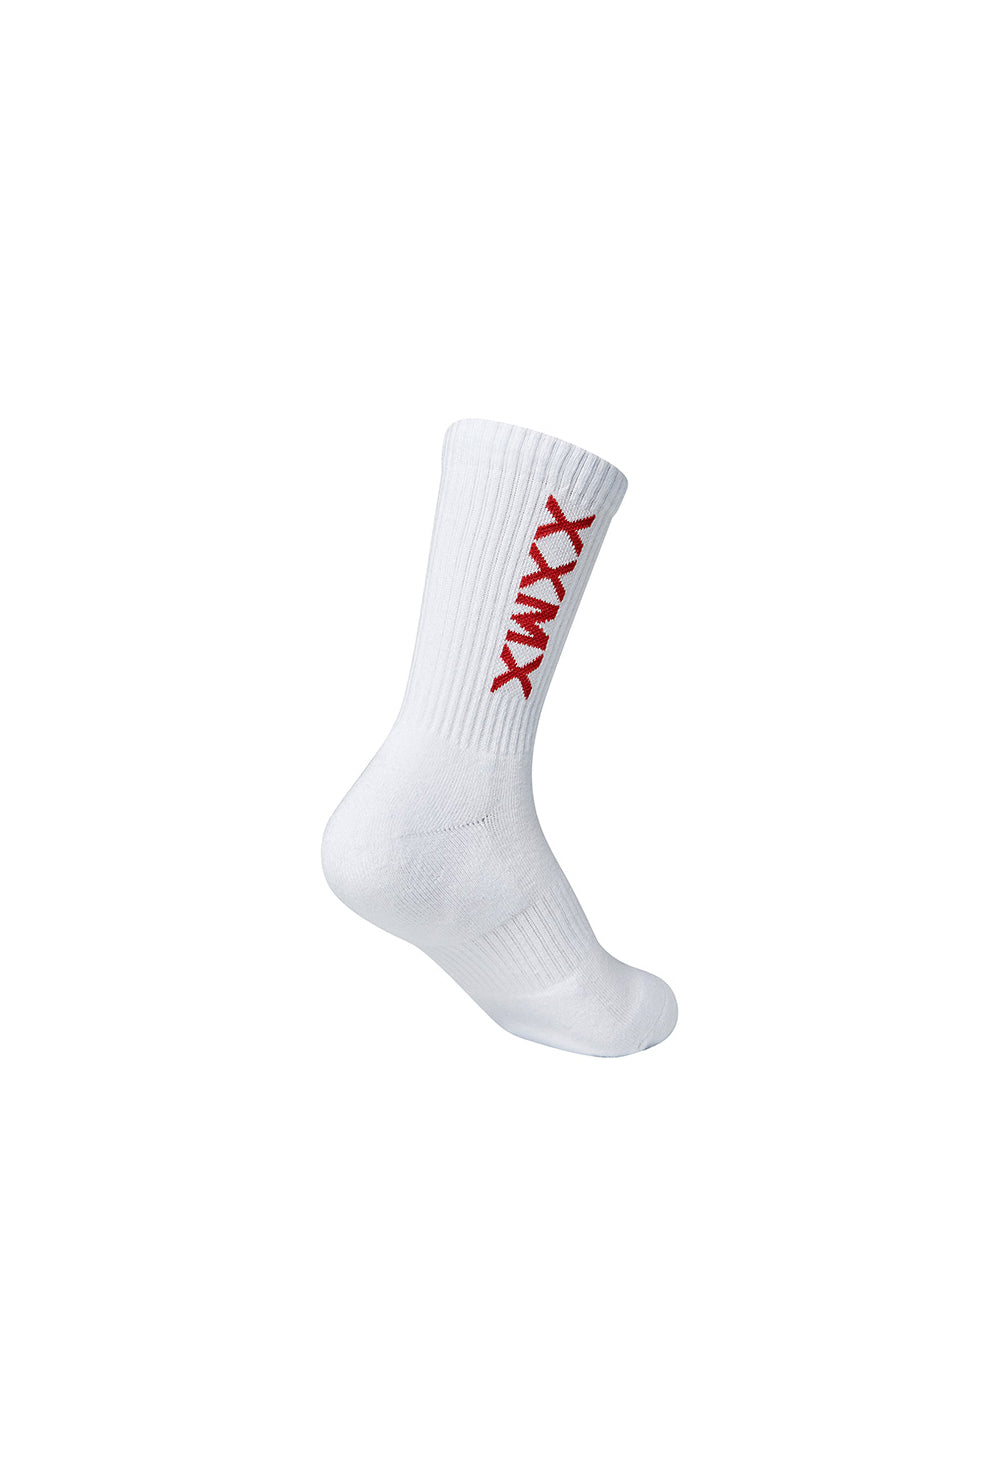 XEXYMIX Logo Crew Socks - Red